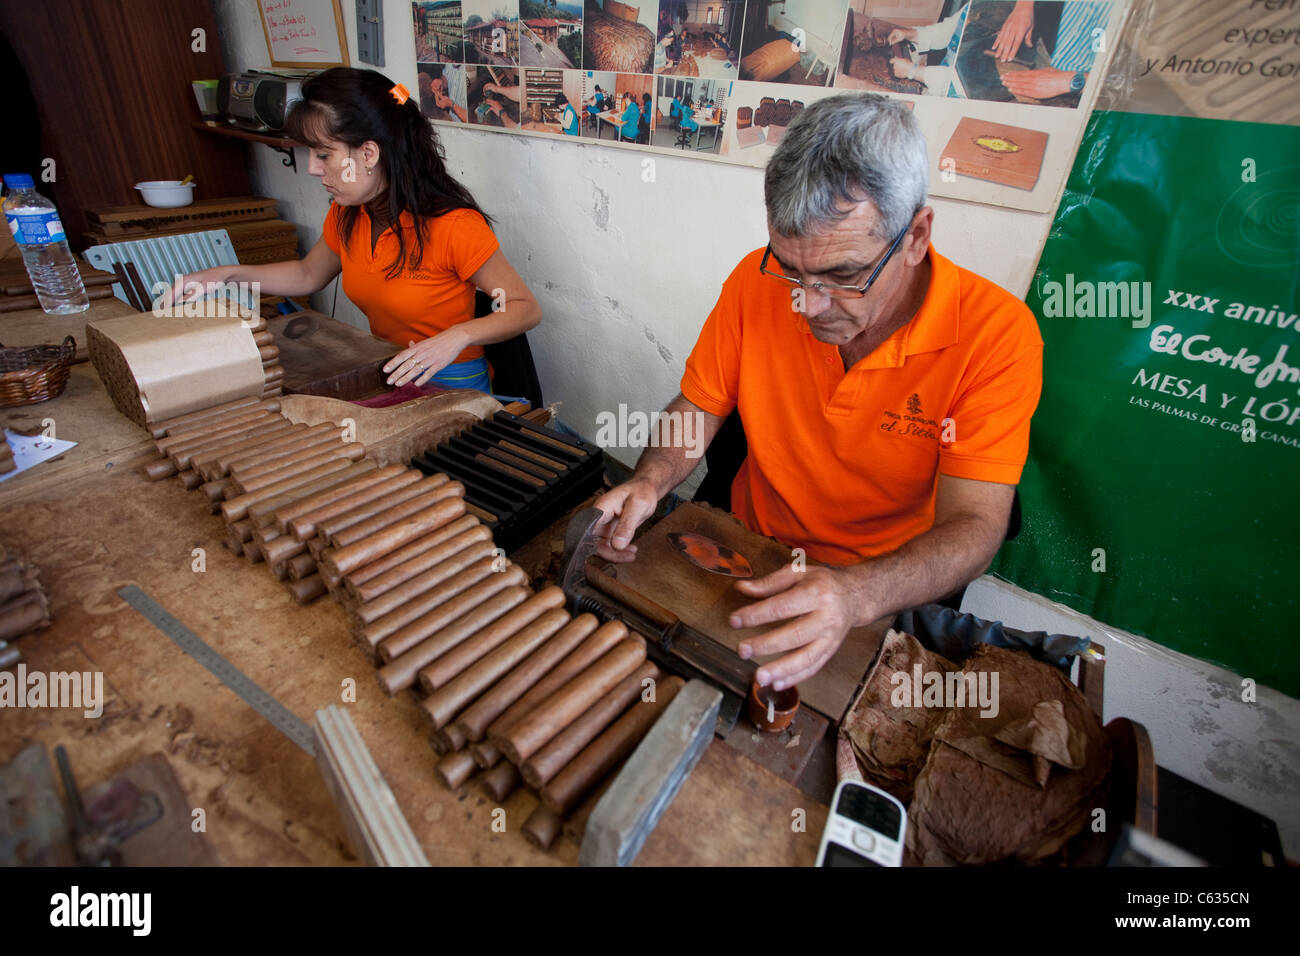 Trabajador producir puros, tabaco fabricación el sitio, Breña Alta, La Palma, Islas Canarias, España, Europa Foto de stock